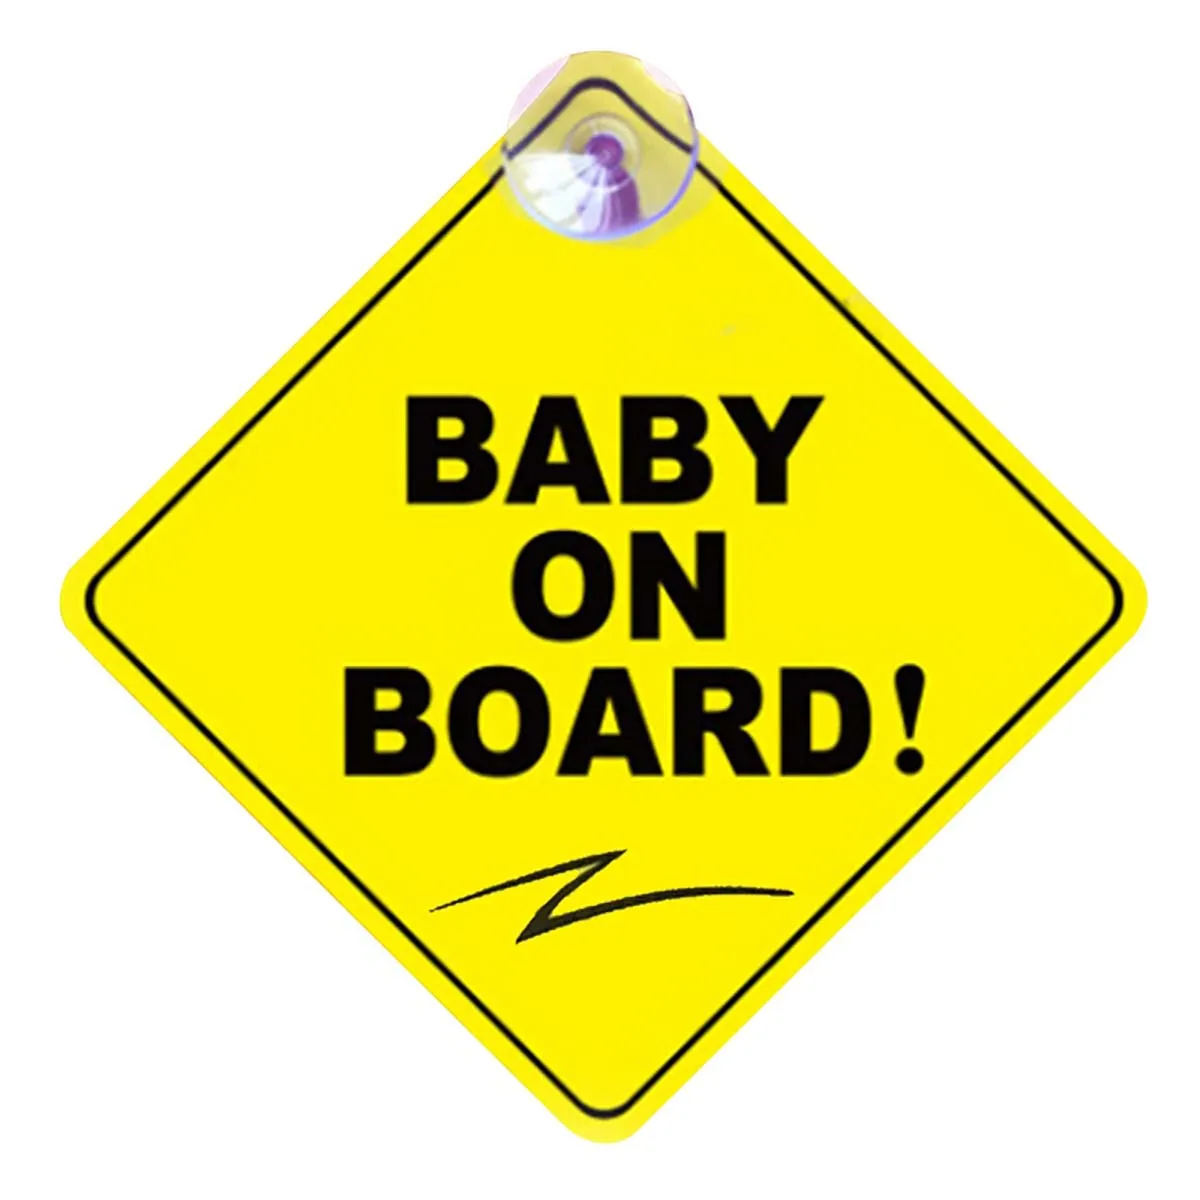 Автомобильный Стикеры Baby ON BOARD Предупреждение знак безопасности Стикеры s виниловые наклейки в виде Фотообоев c переводными картинками стайлинга автомобилей для тела двери окна Стикеры